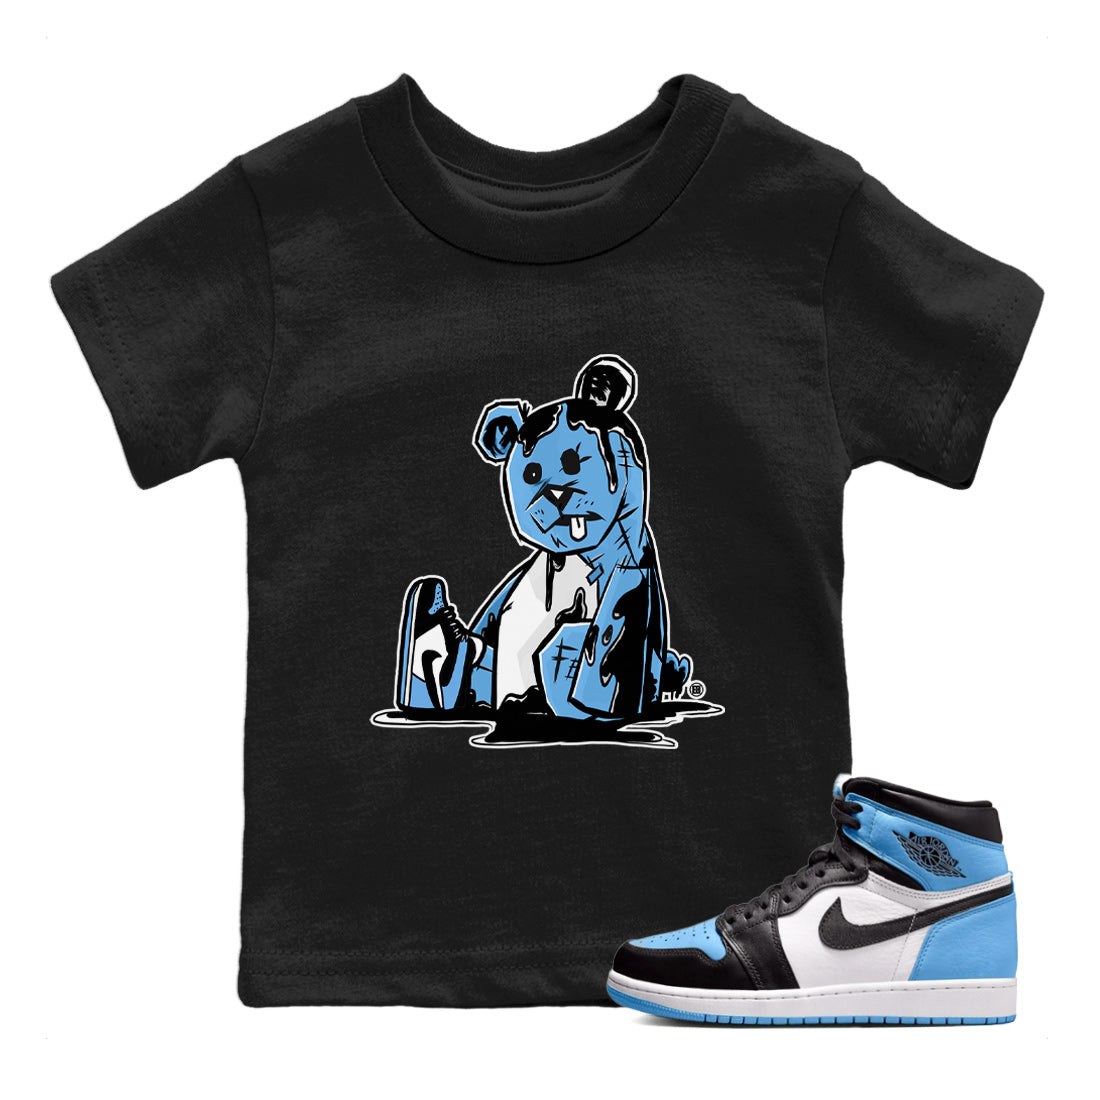 Air Jordan 1 Retro High OG UNC Toe Shirt to match Jordans Dark Bear Streetwear Sneaker Shirt Air Jordan 1 Retro UNC Toe Shirts Kids and Baby Tees Black 1